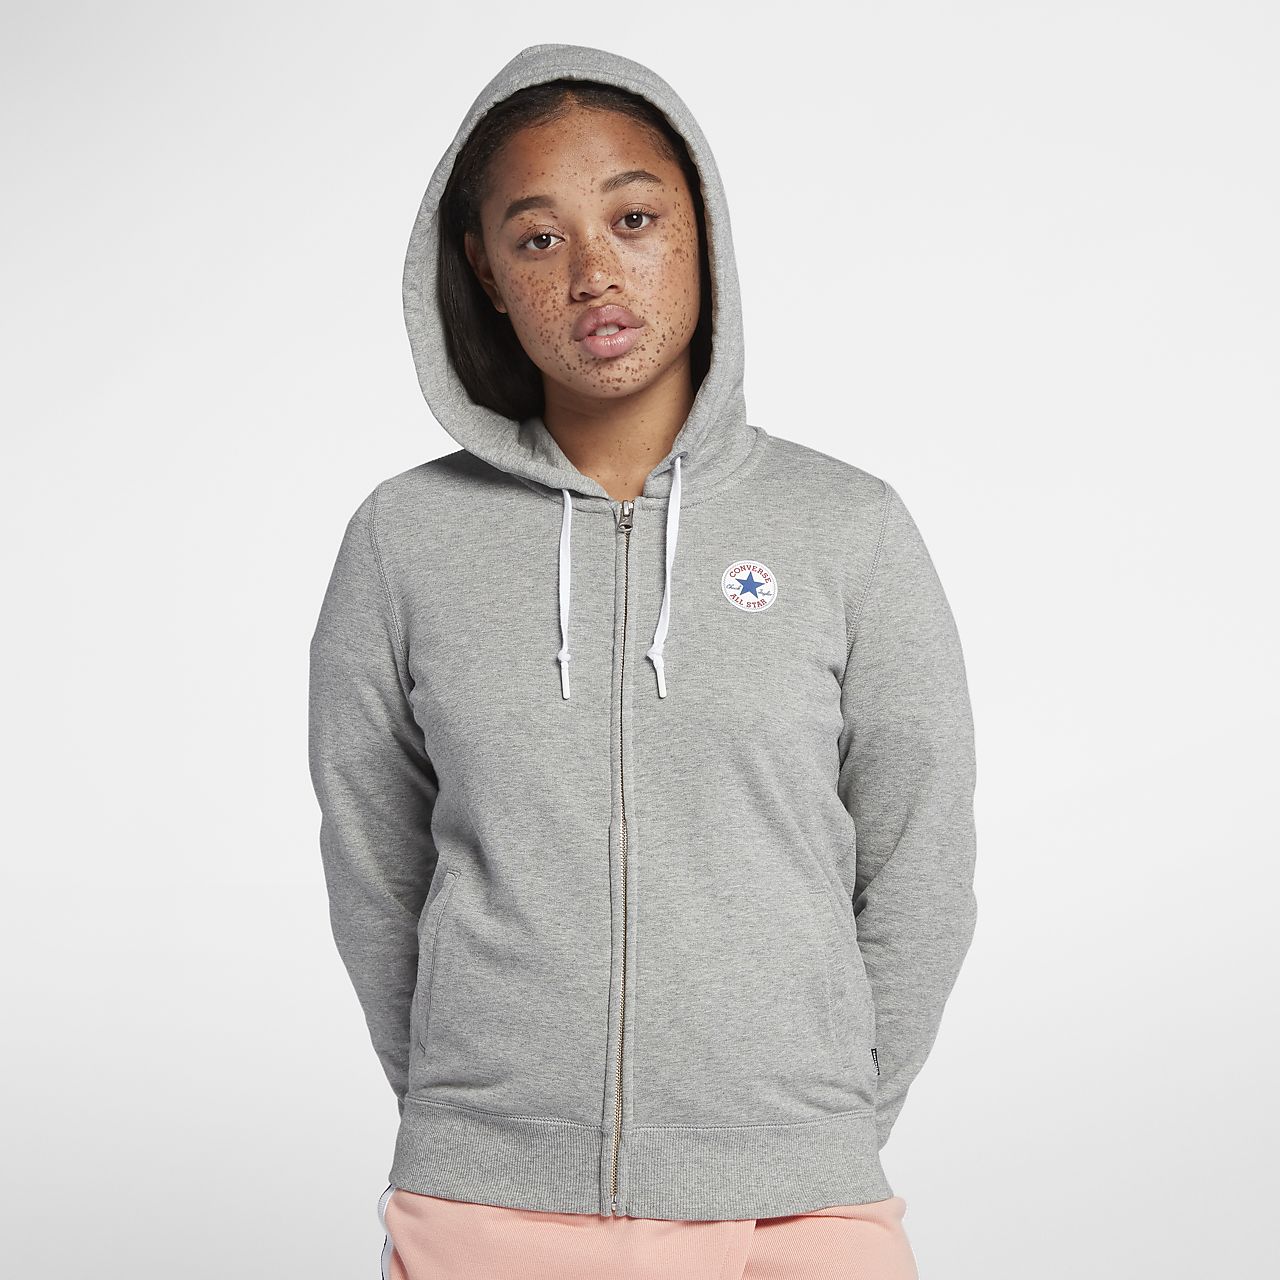 converse grey hoodie womens